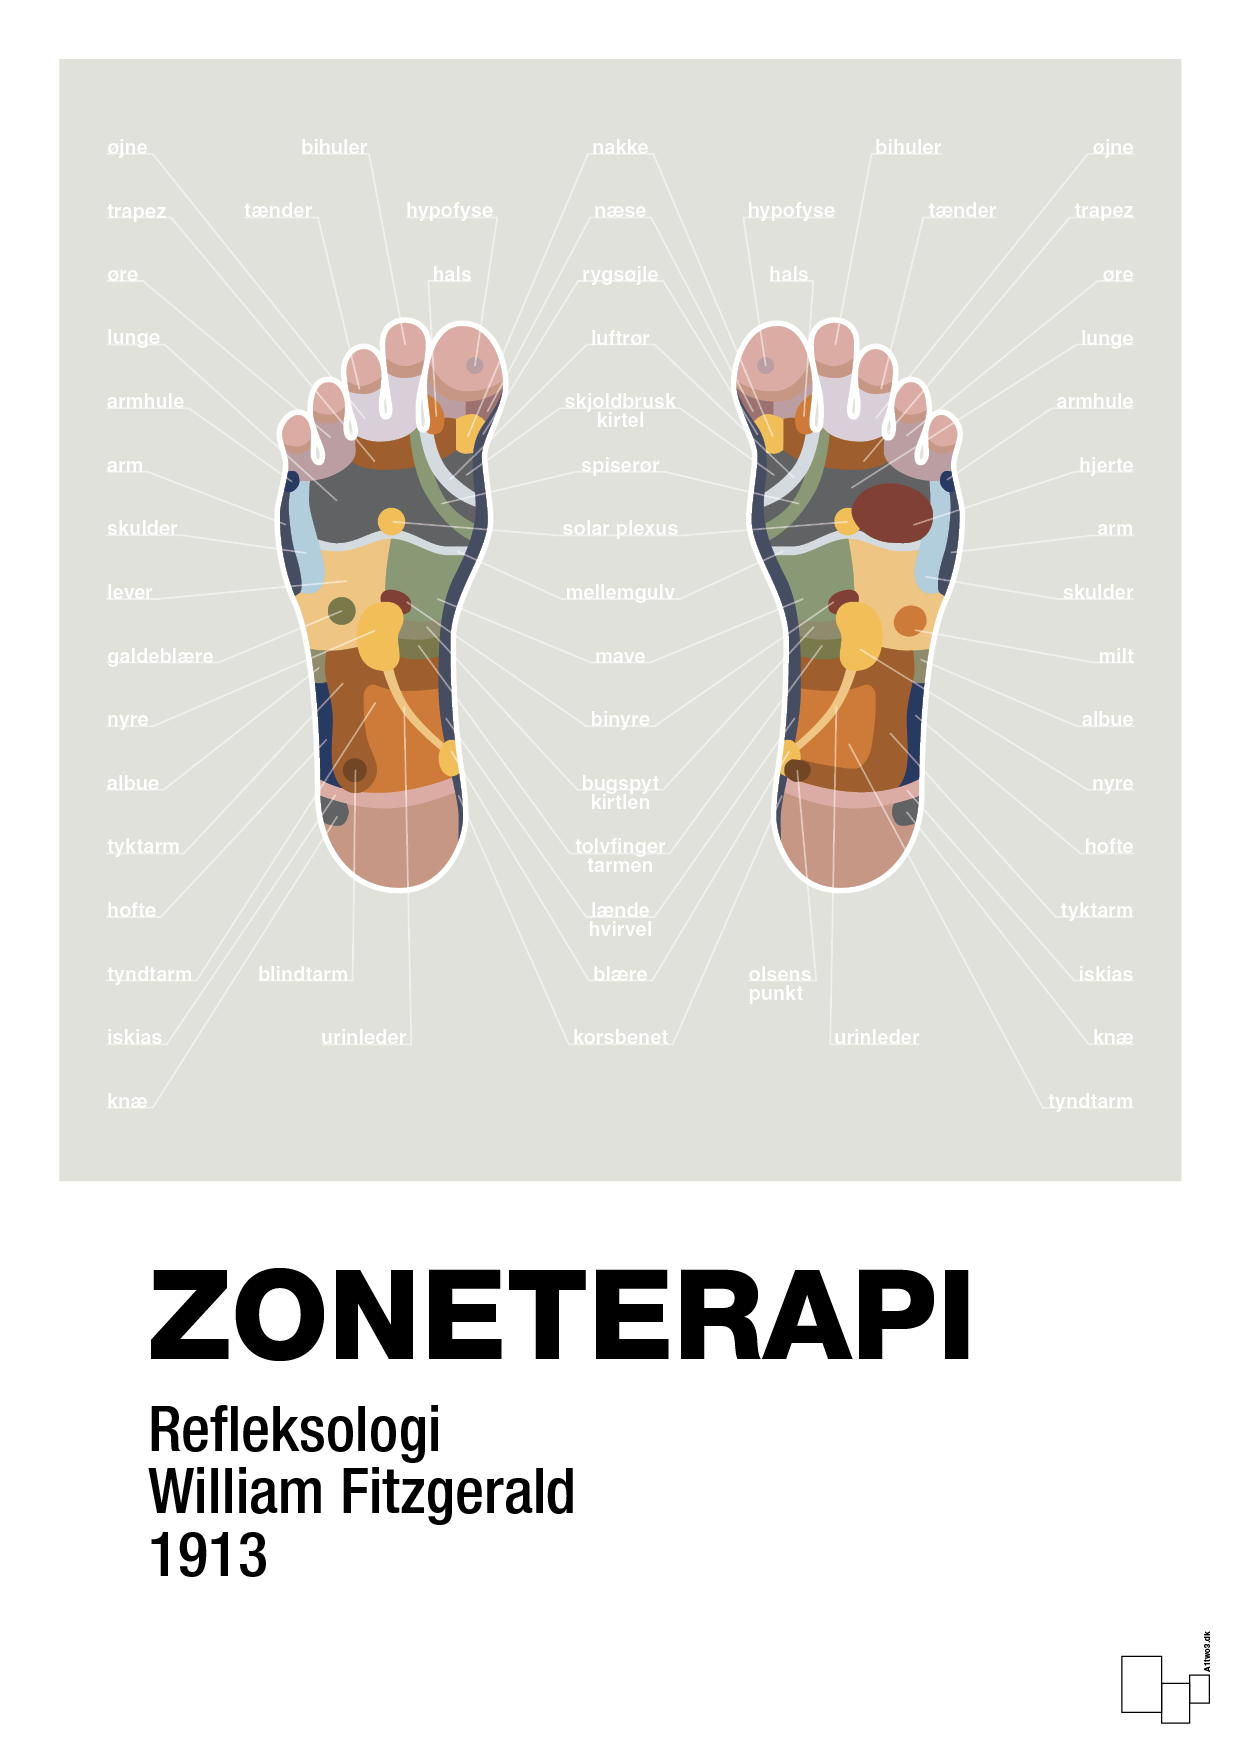 zoneterapi - Plakat med Videnskab i Painters White